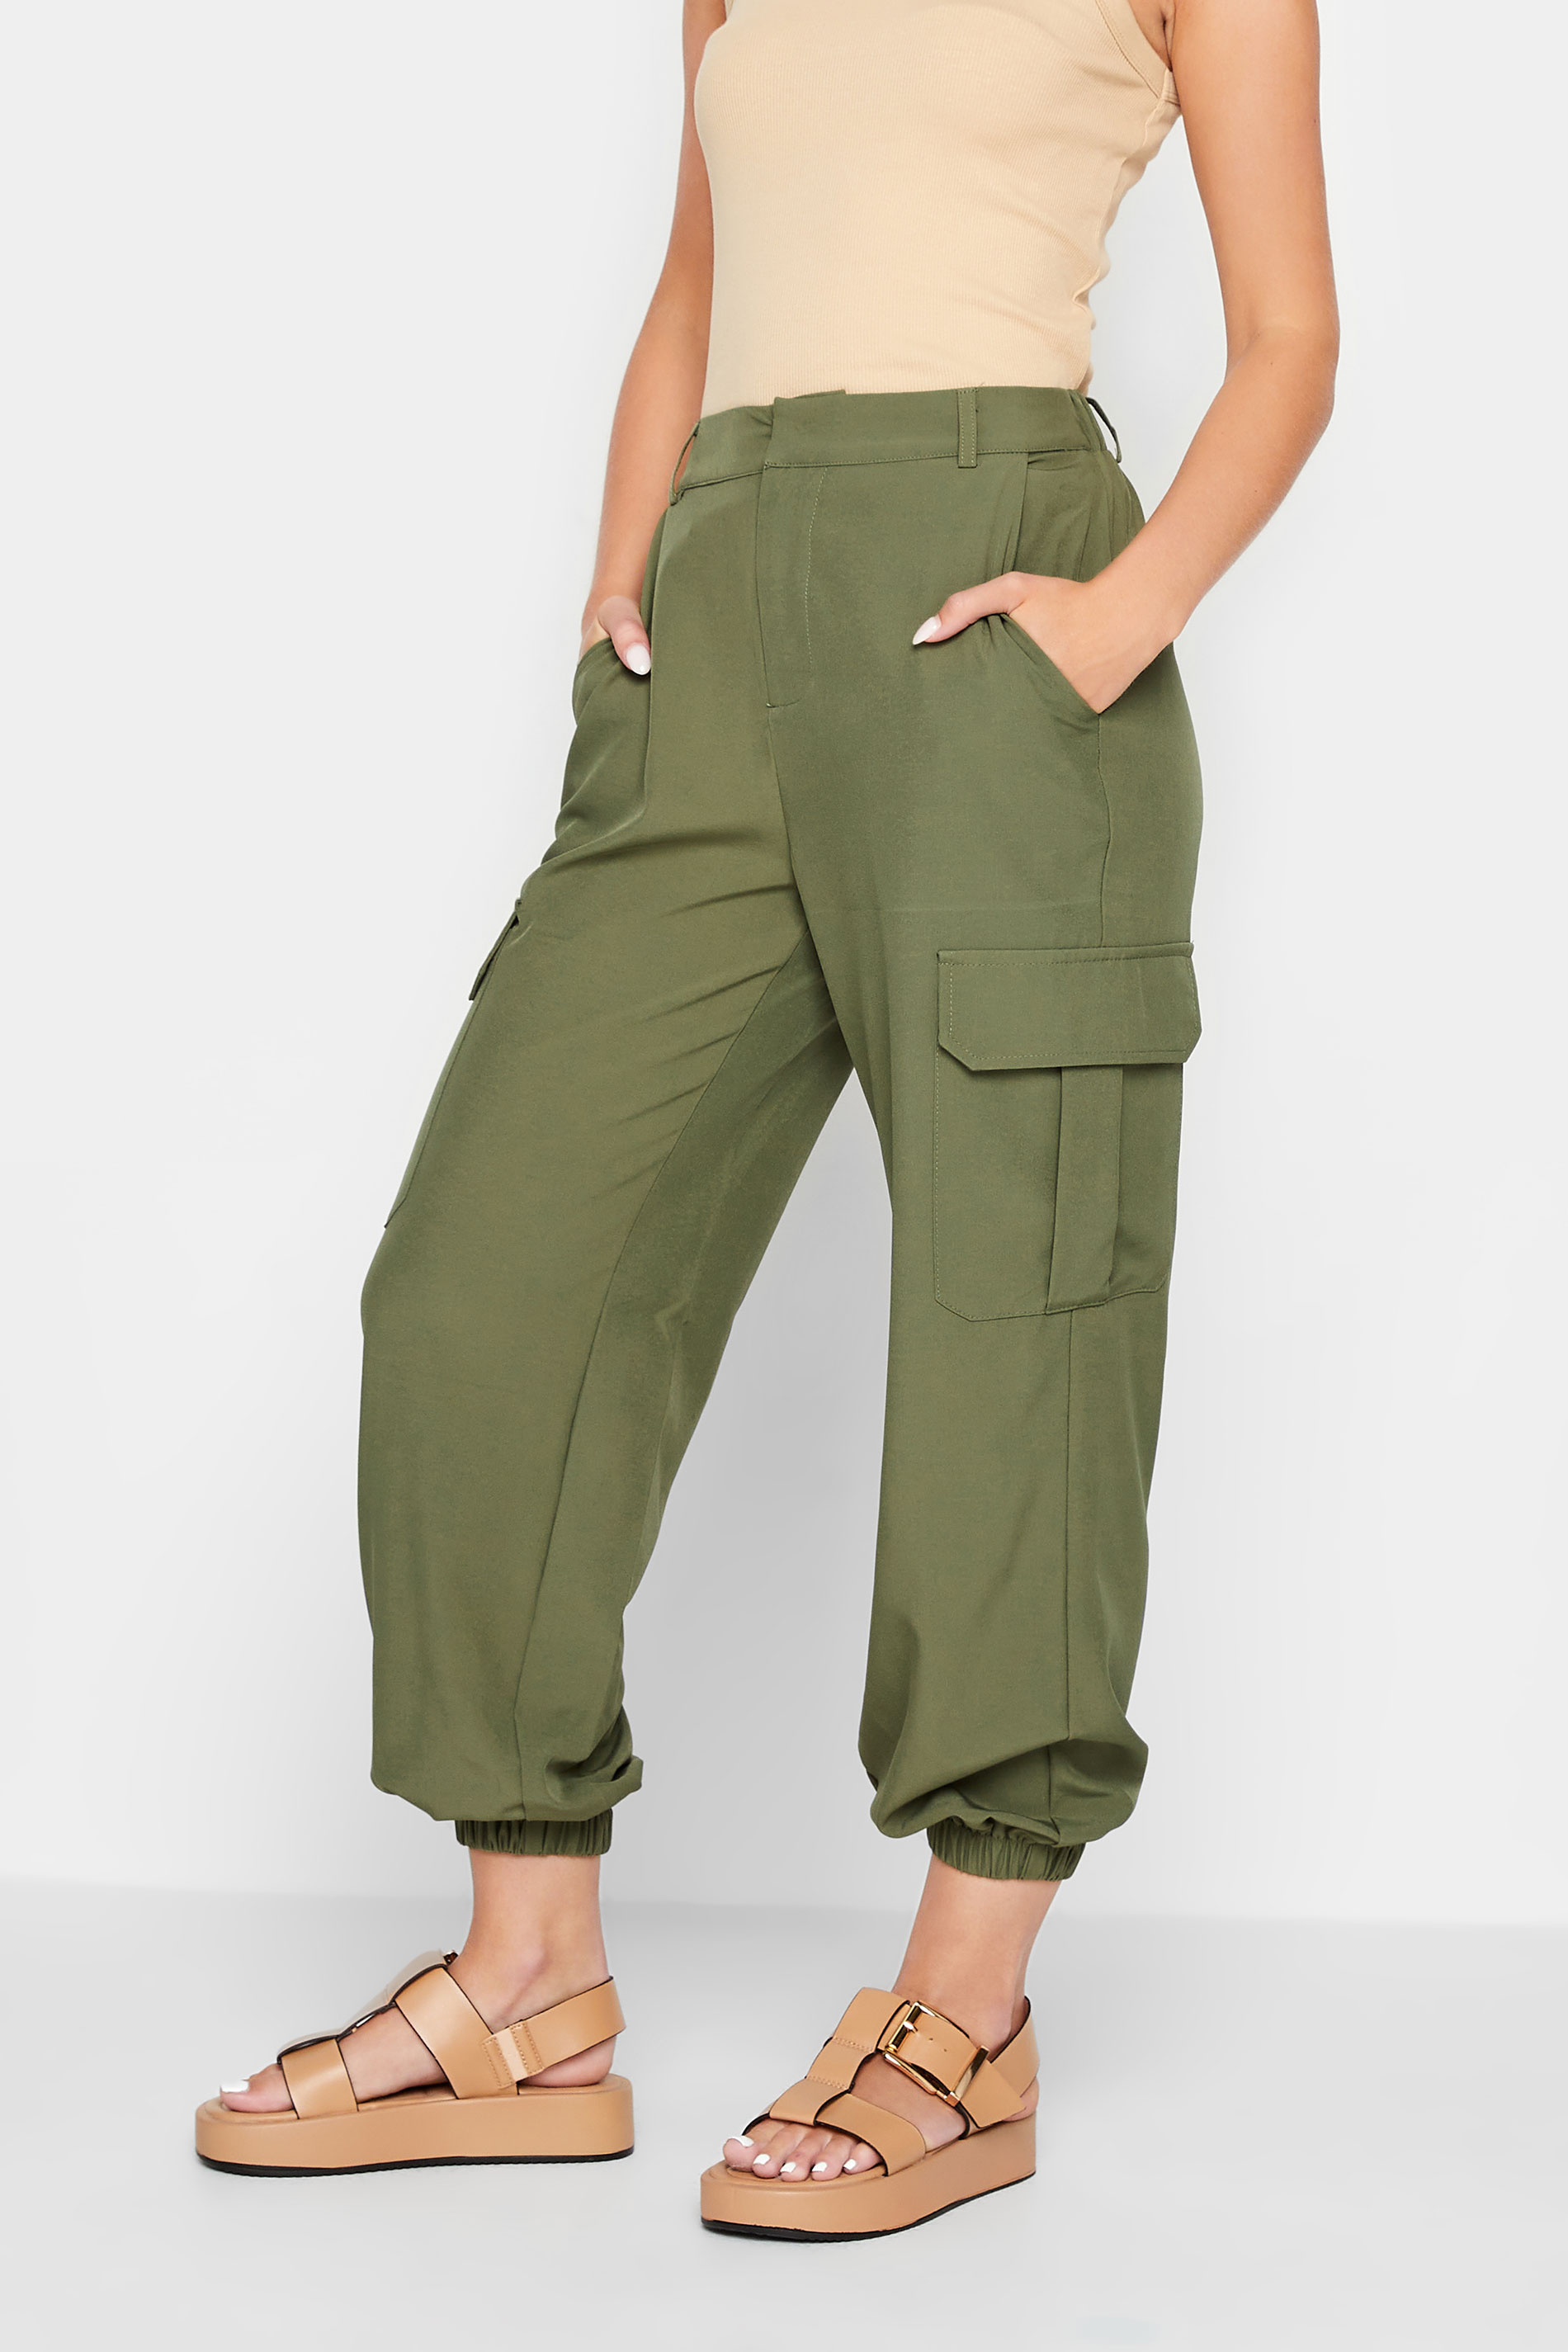 PixieGirl Khaki Green Cargo Trousers | PixieGirl 2